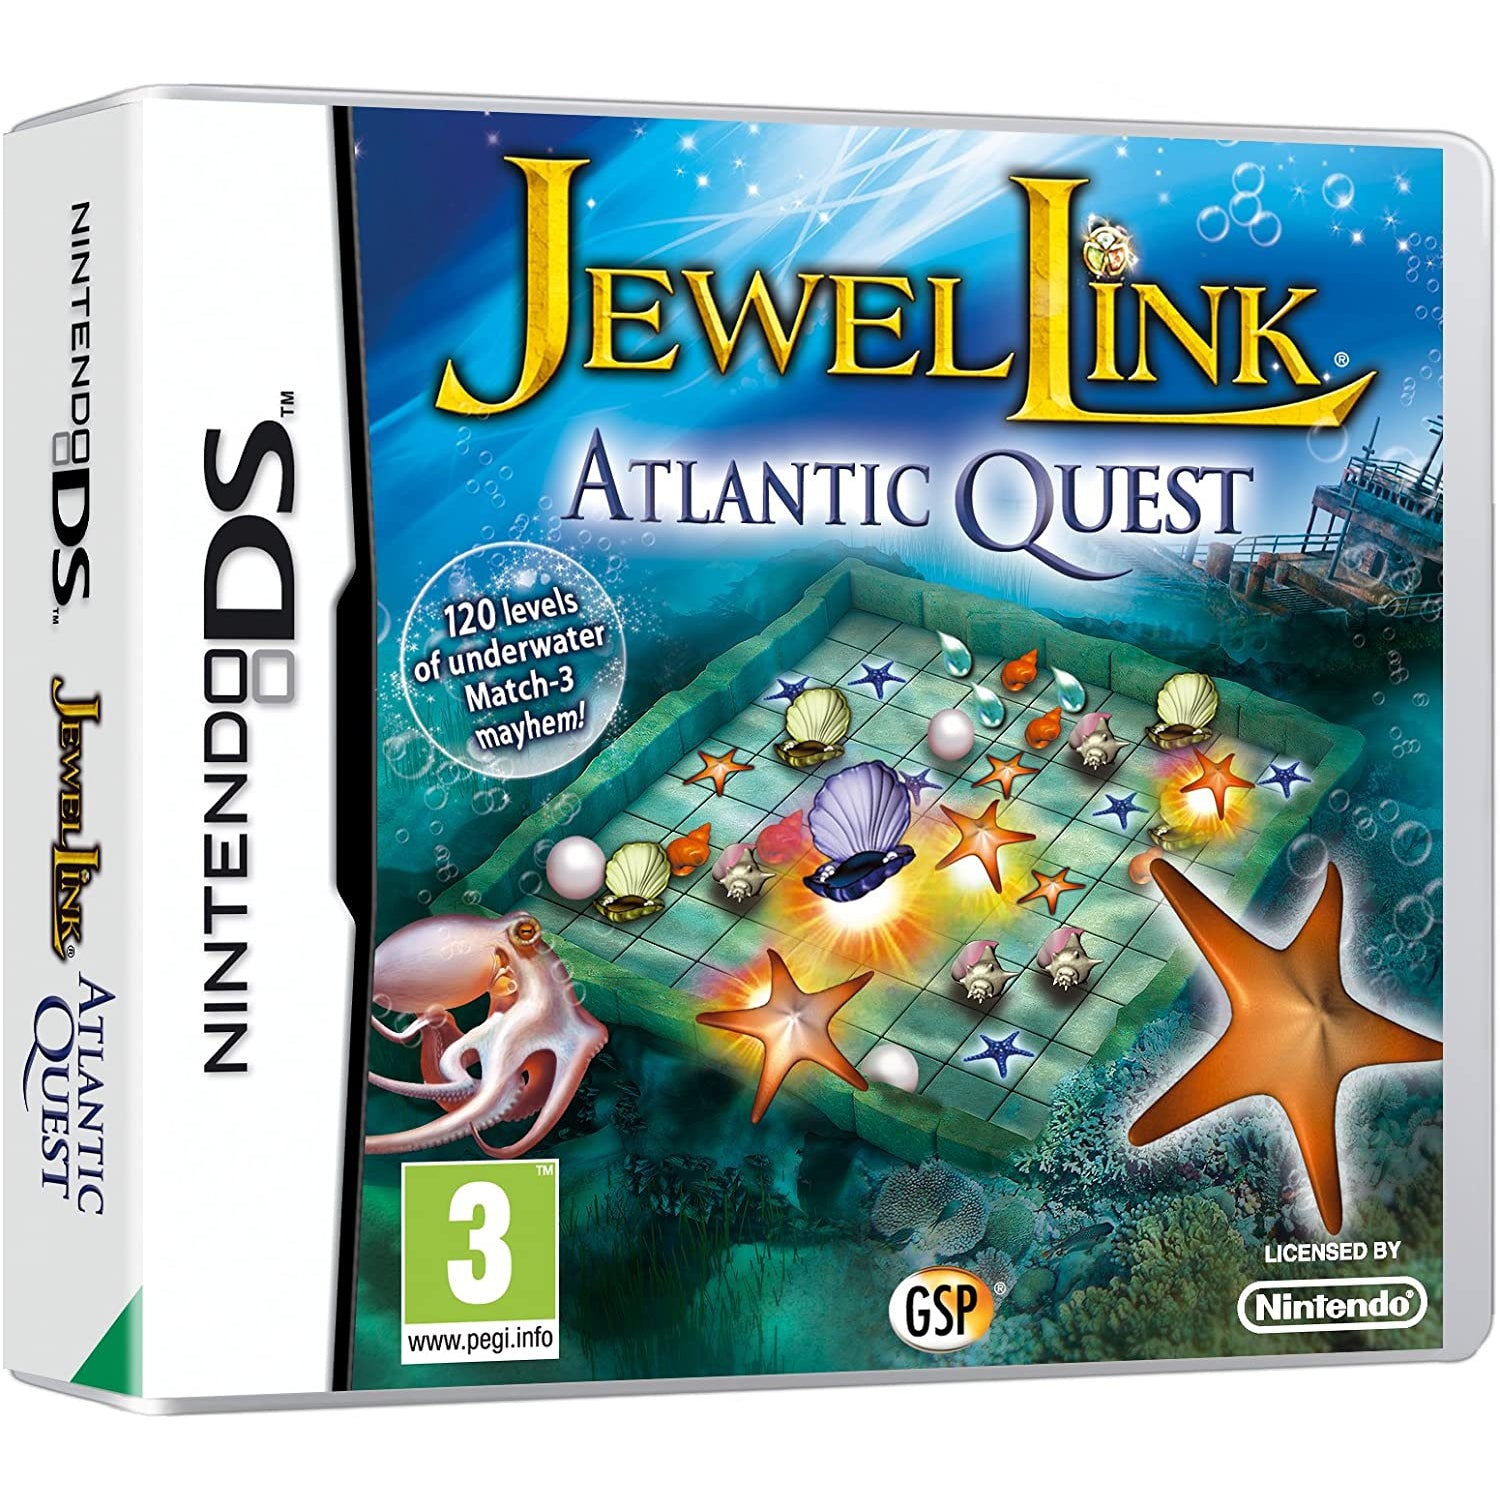 Jewel Link Atlantic Quest (Nintendo DS)